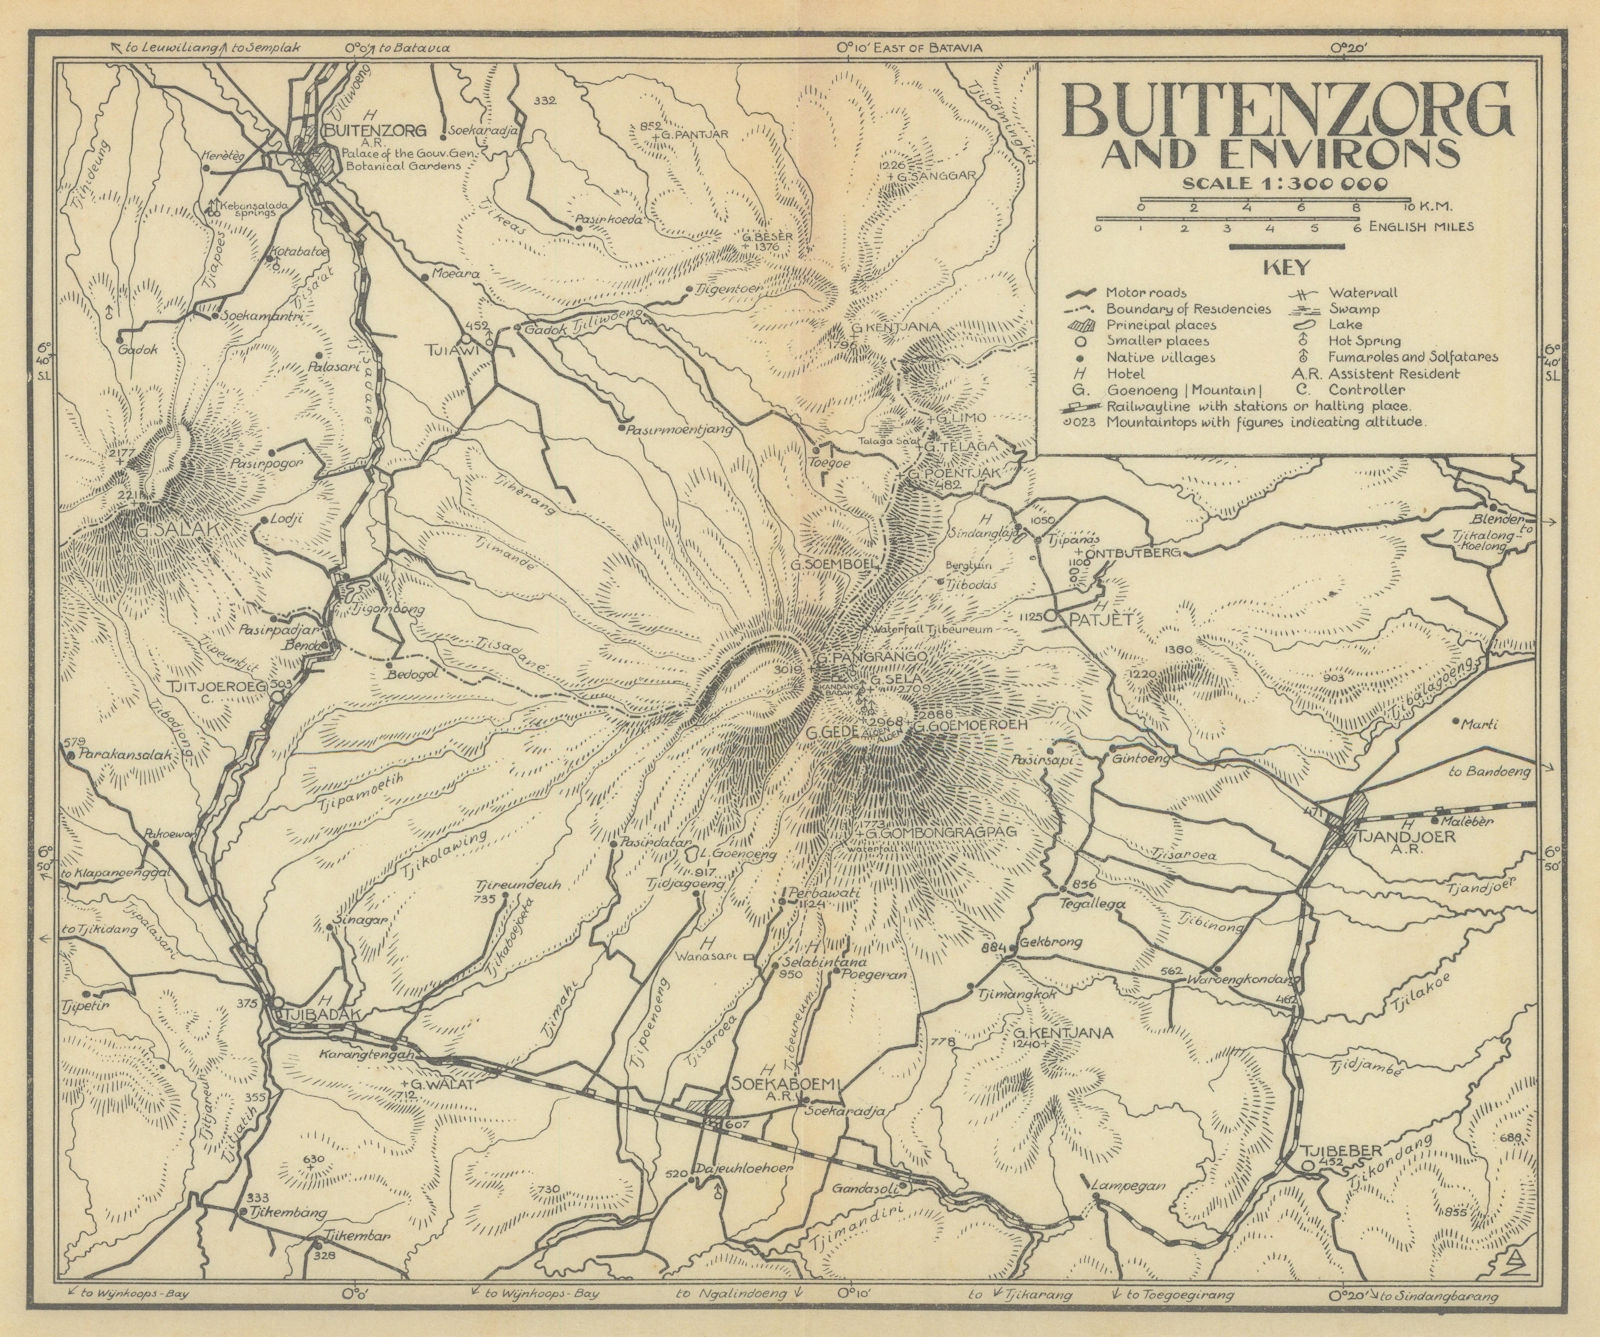 Buitenzorg & environs. Bogor & Pangrango, Java, Indonesia. VAN STOCKUM 1930 map